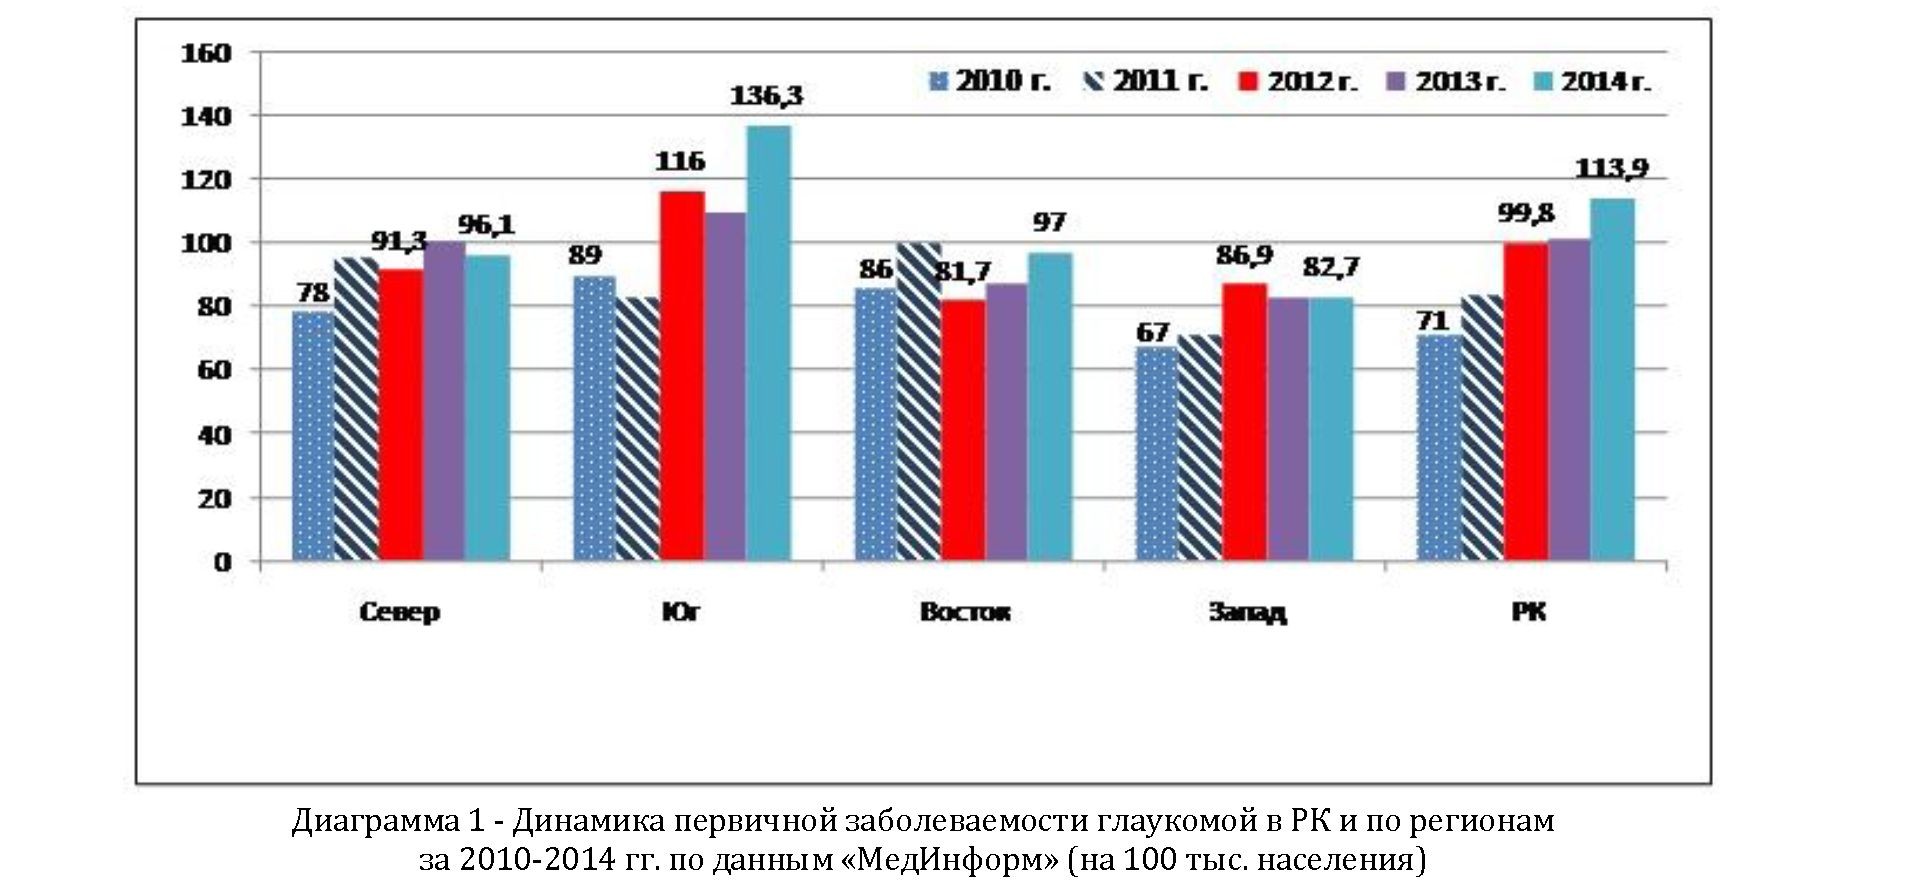 Результаты скрининга глаукомы в Казахстане за 2011-2014 годы и направления его совершенствования